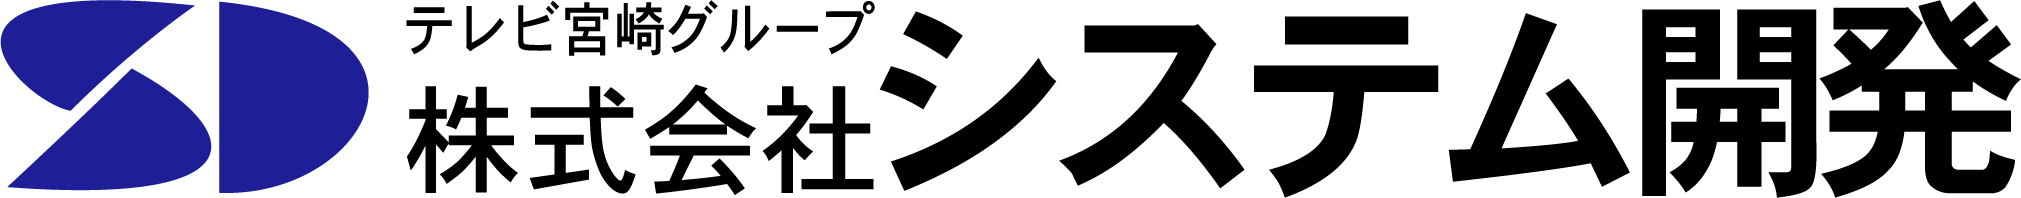 SystemDev logo